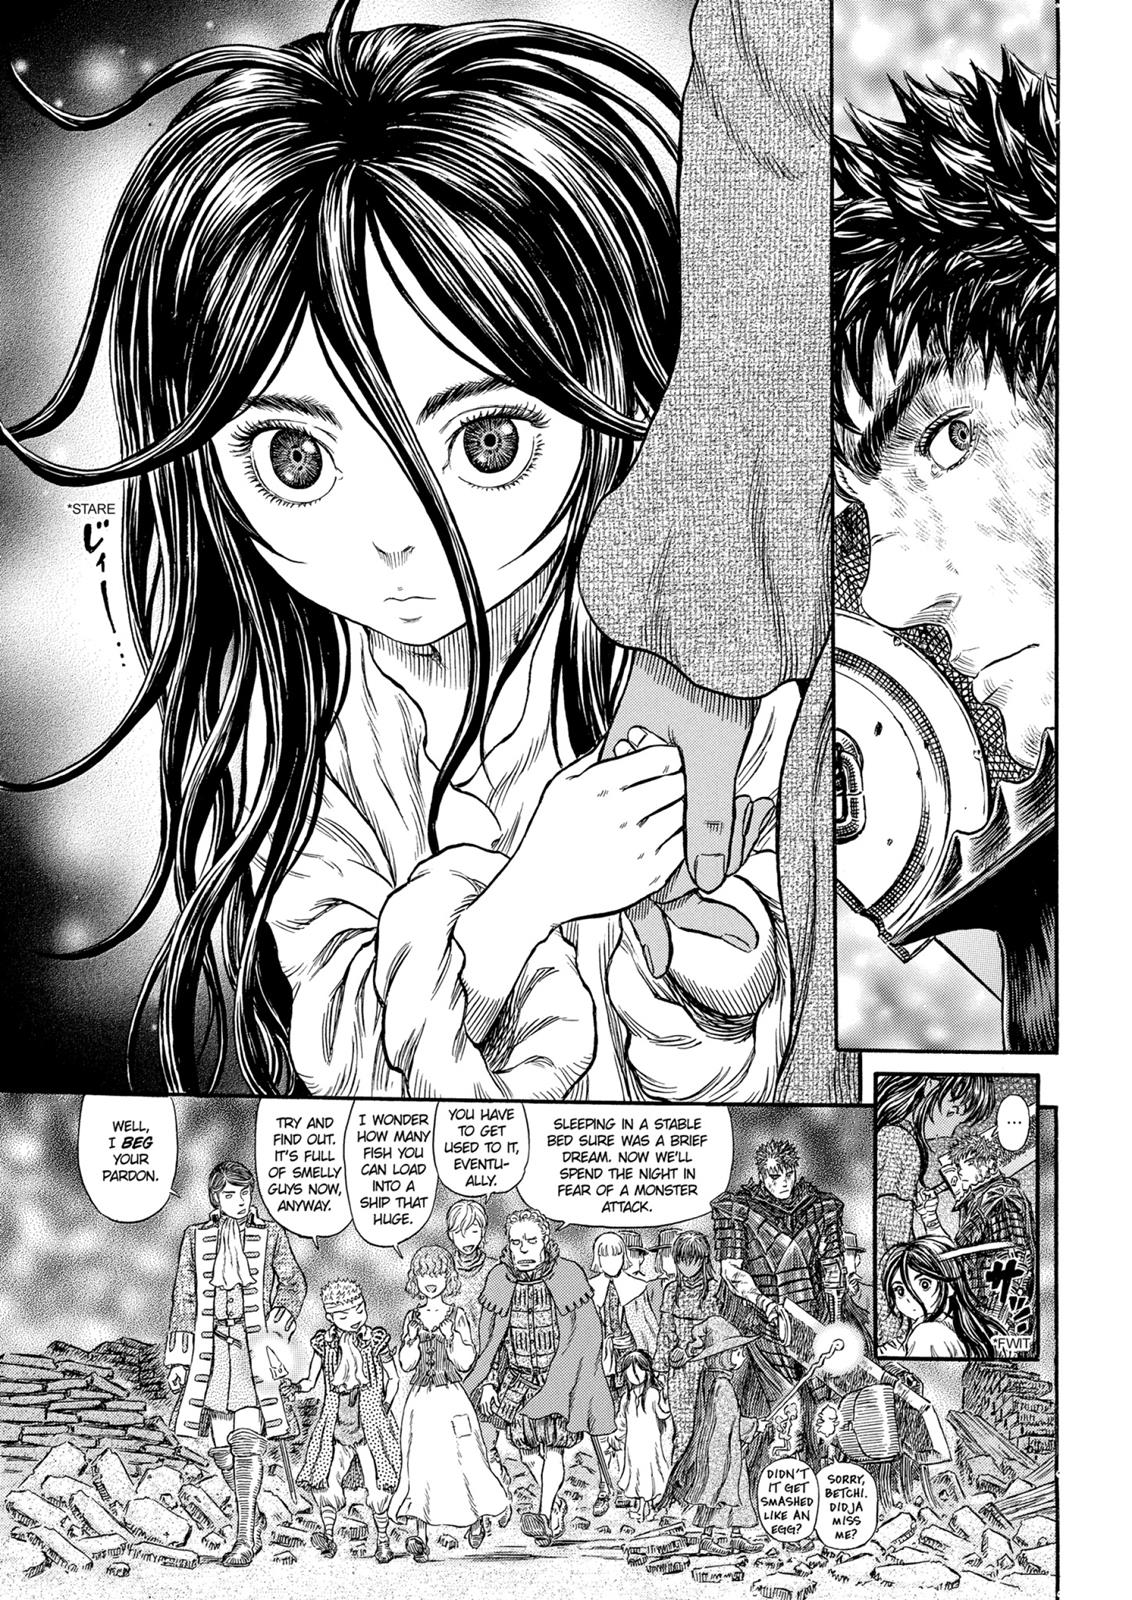 Berserk Manga Chapter 317 image 18